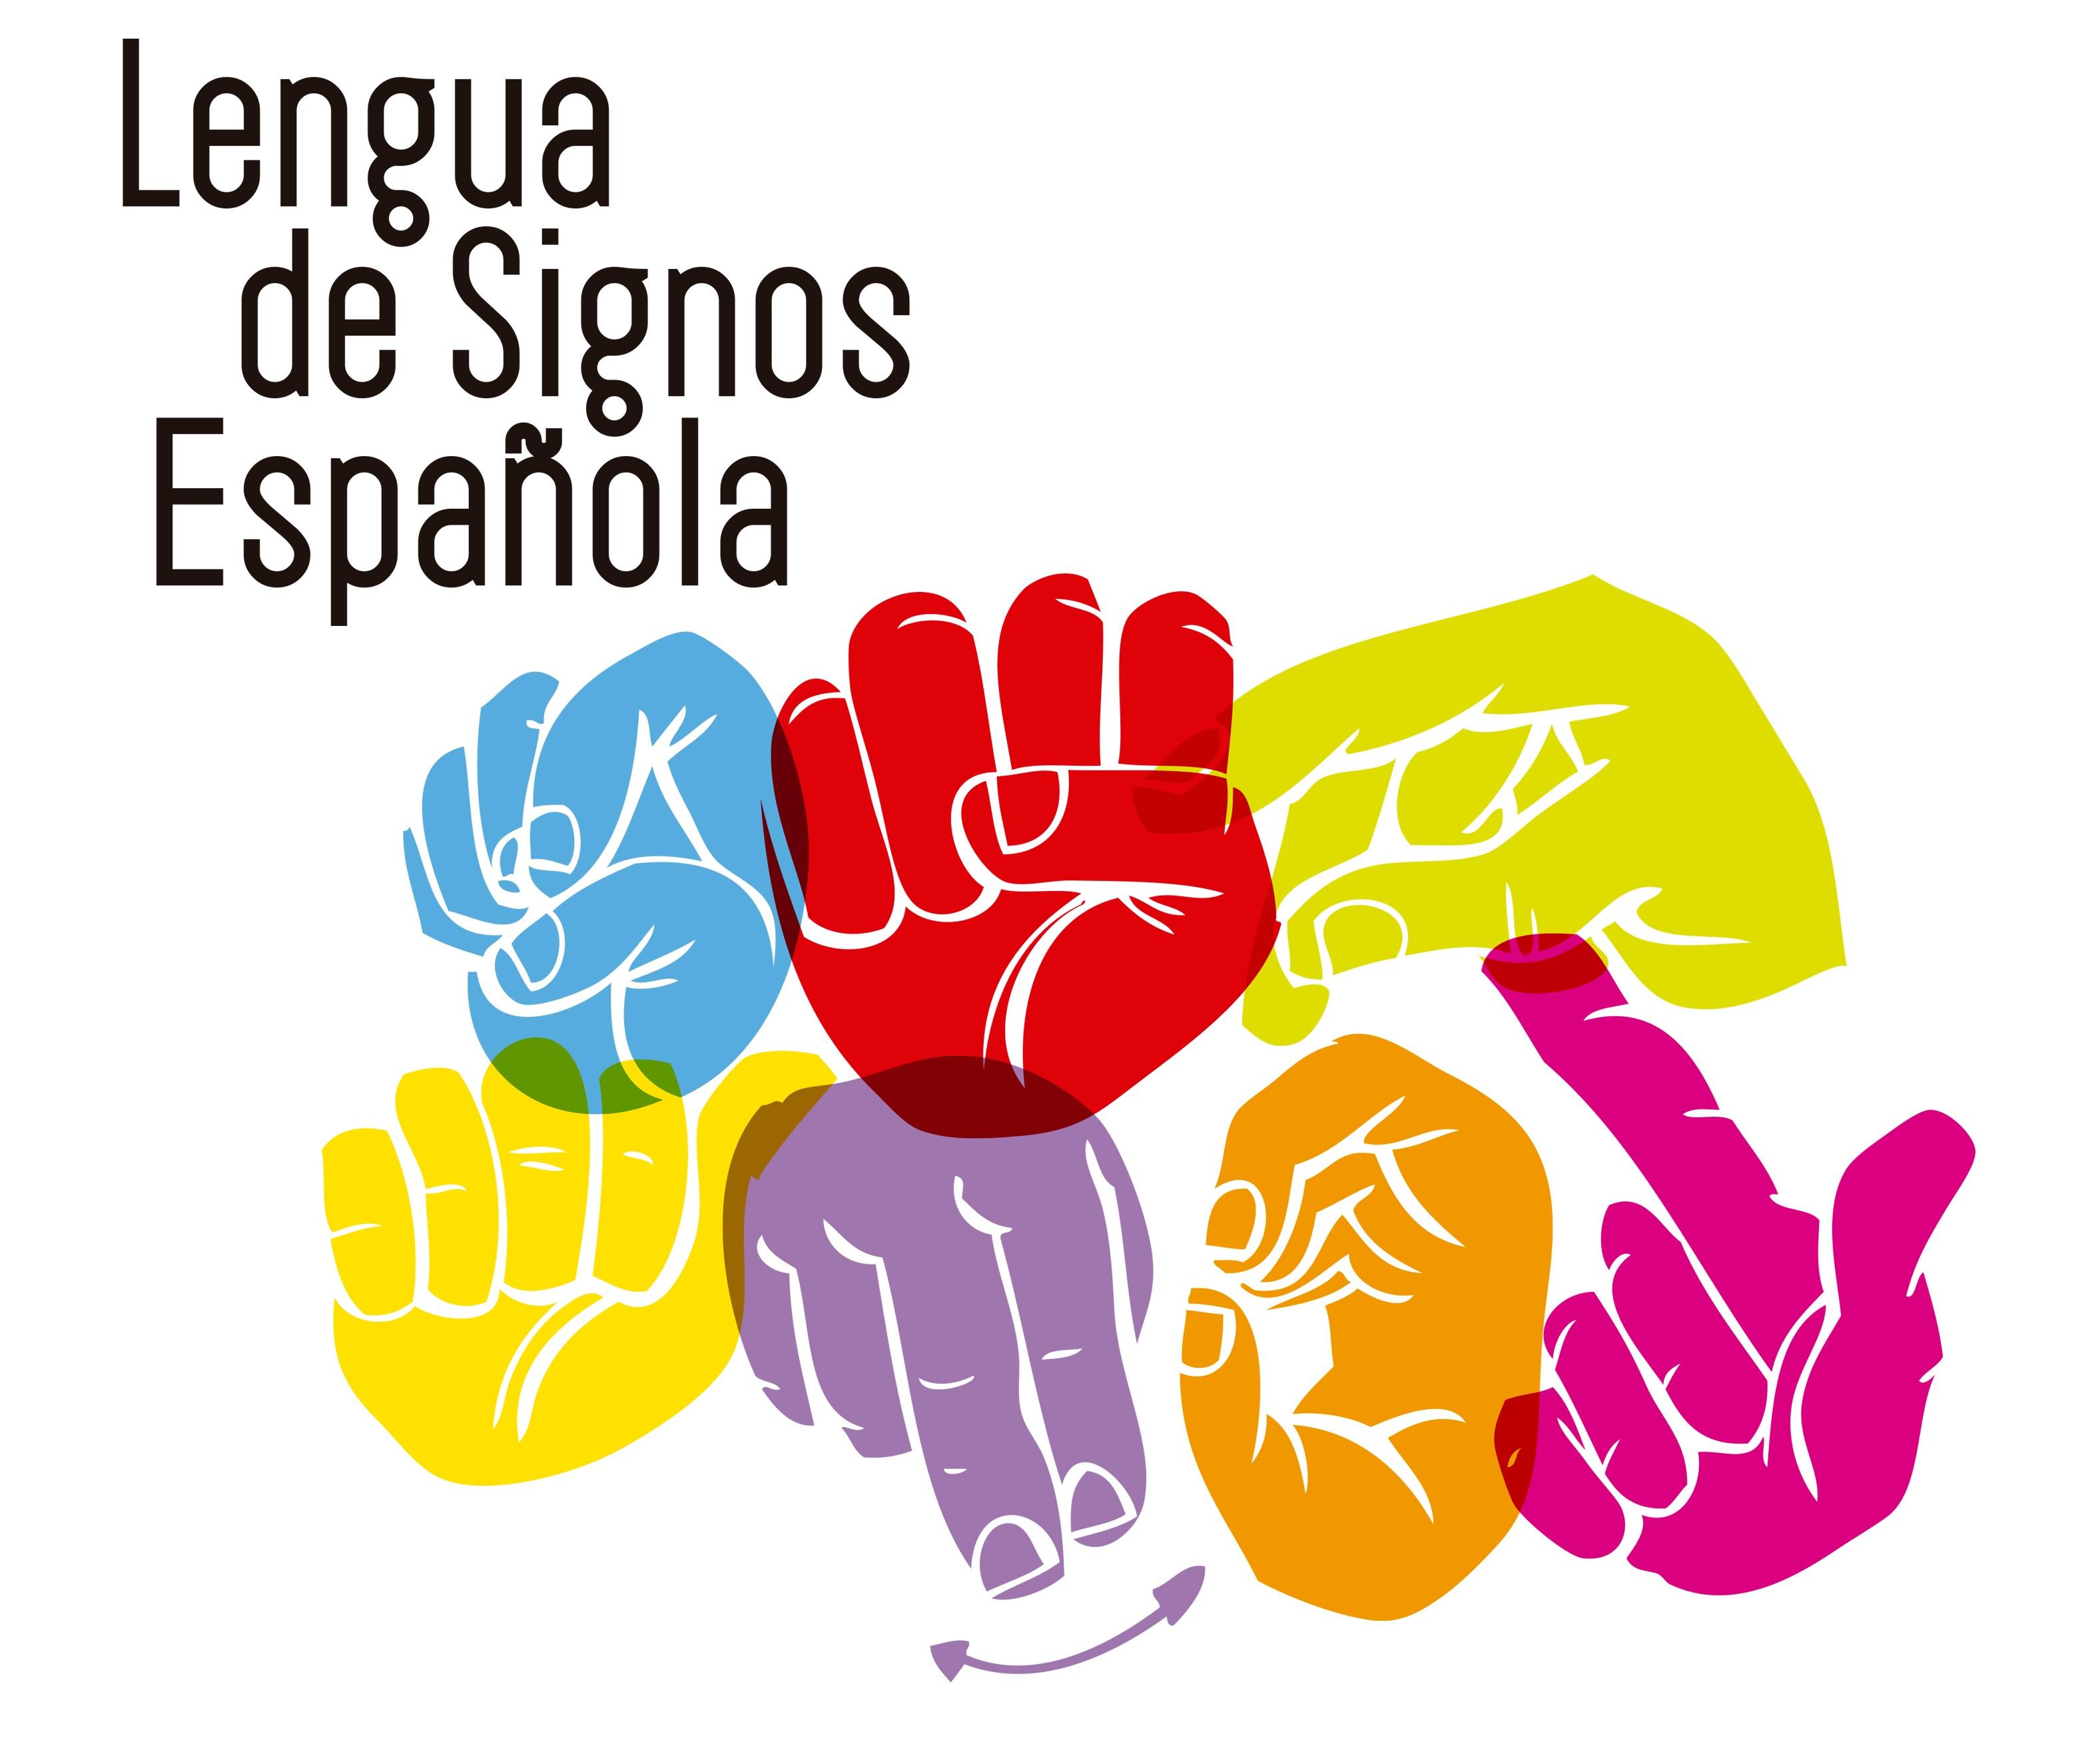 Banquete Intestinos Malgastar 14 de junio, Día Nacional de las Lenguas de Signos Españolas | Servicio de  Idiomas – La Laguna – Tenerife